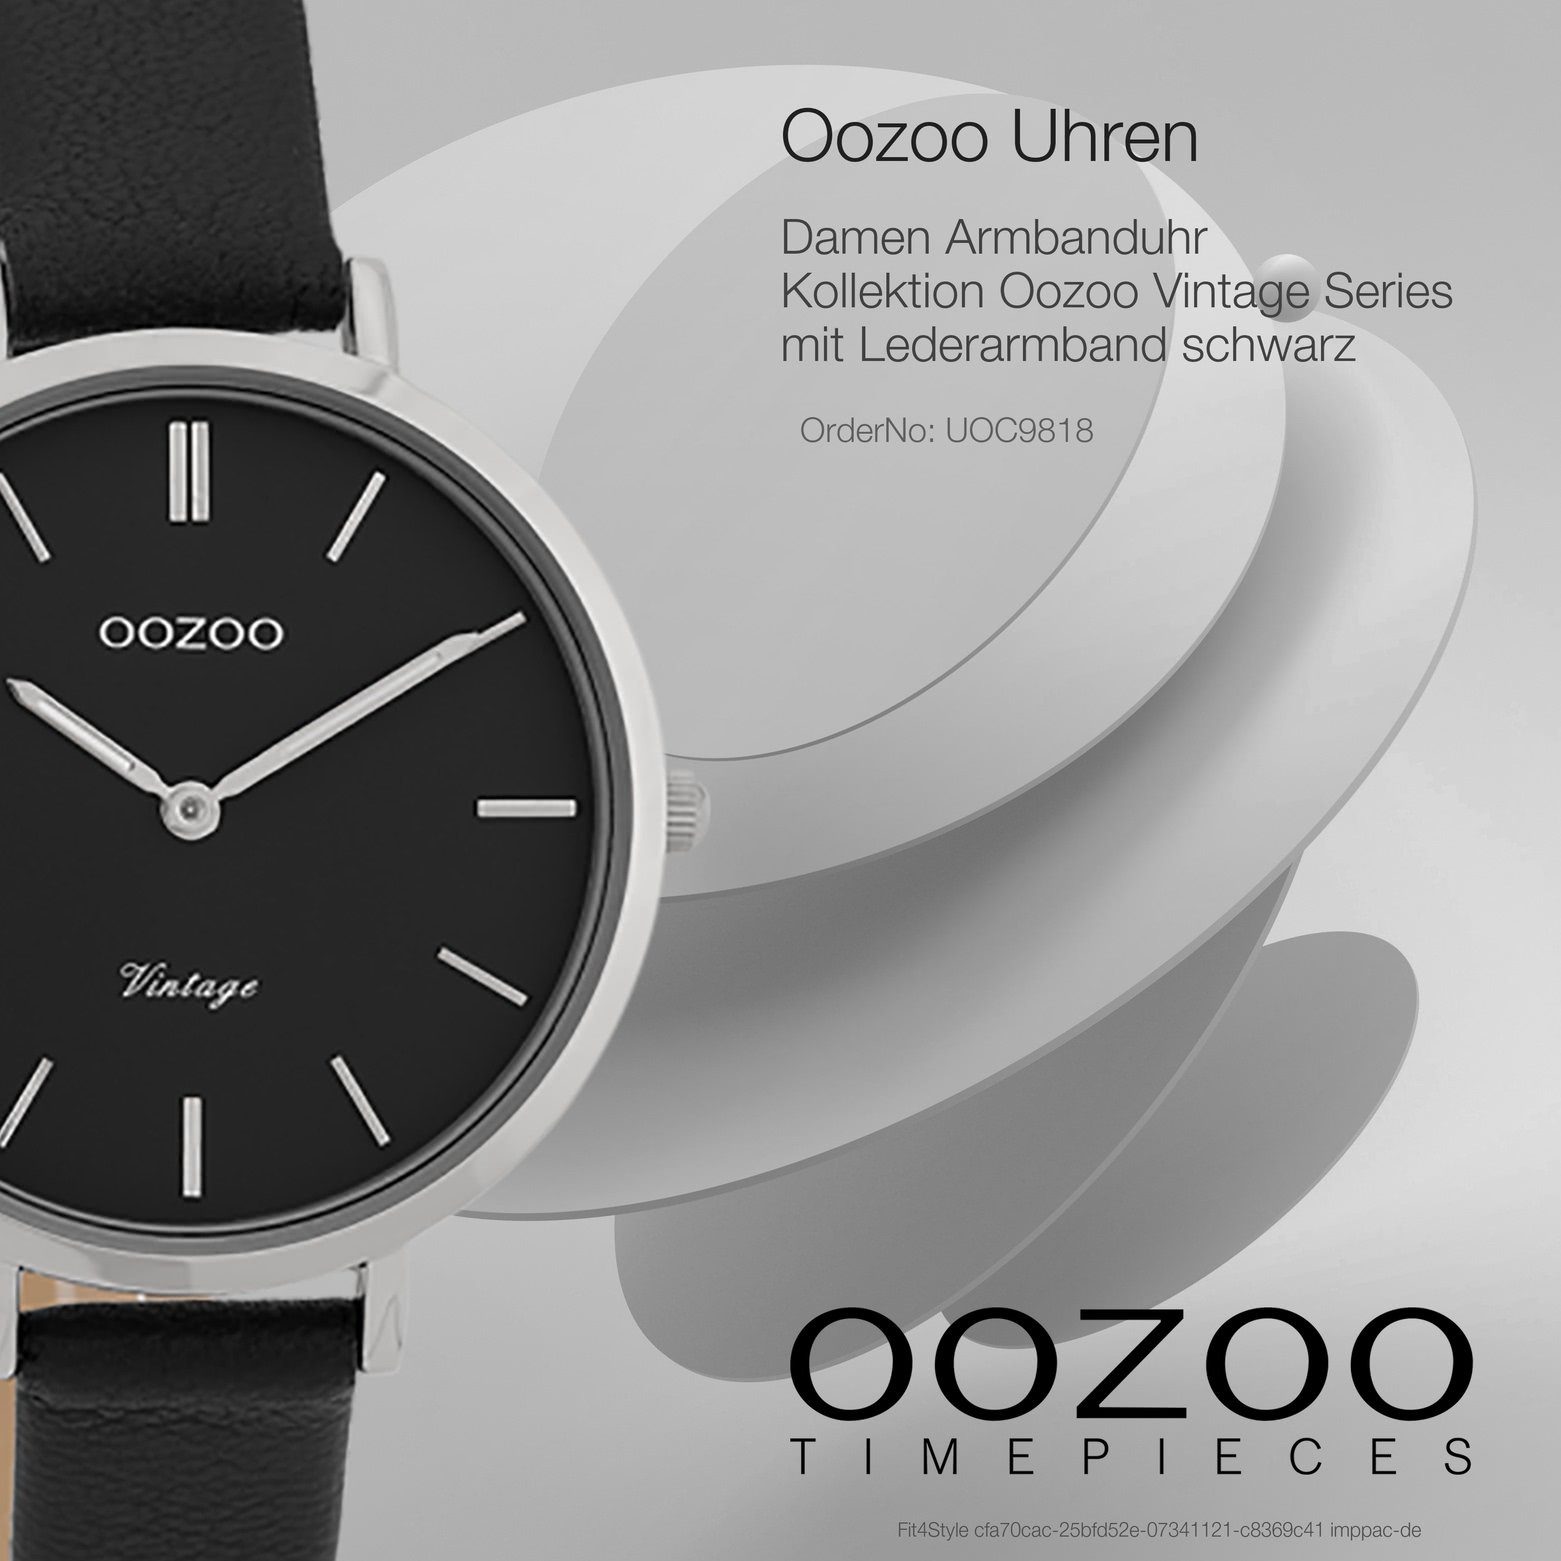 OOZOO mittel Quarzuhr rund, Armbanduhr Fashion-Style Damenuhr Lederarmband, 34mm) schwarz, Oozoo (ca. Damen